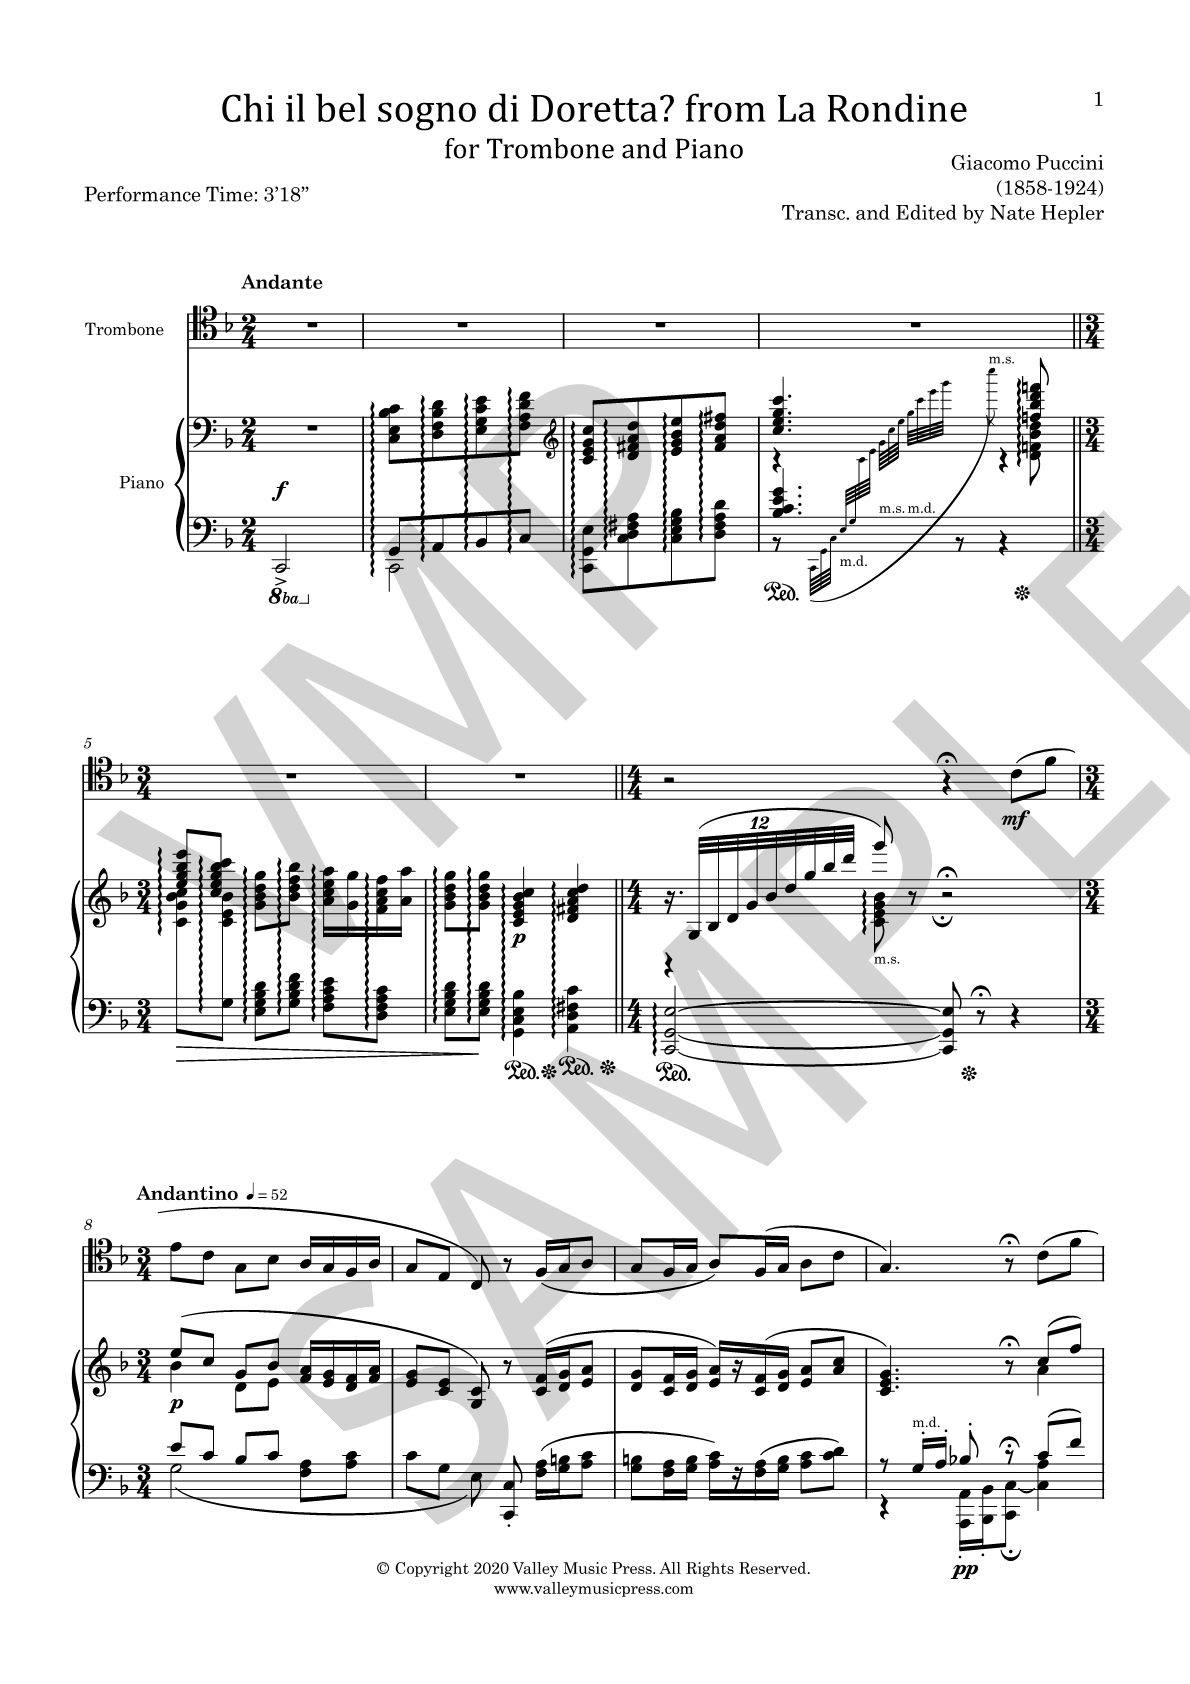 Puccini - Chi il bel sogno from La Rondine (Trb & Piano)